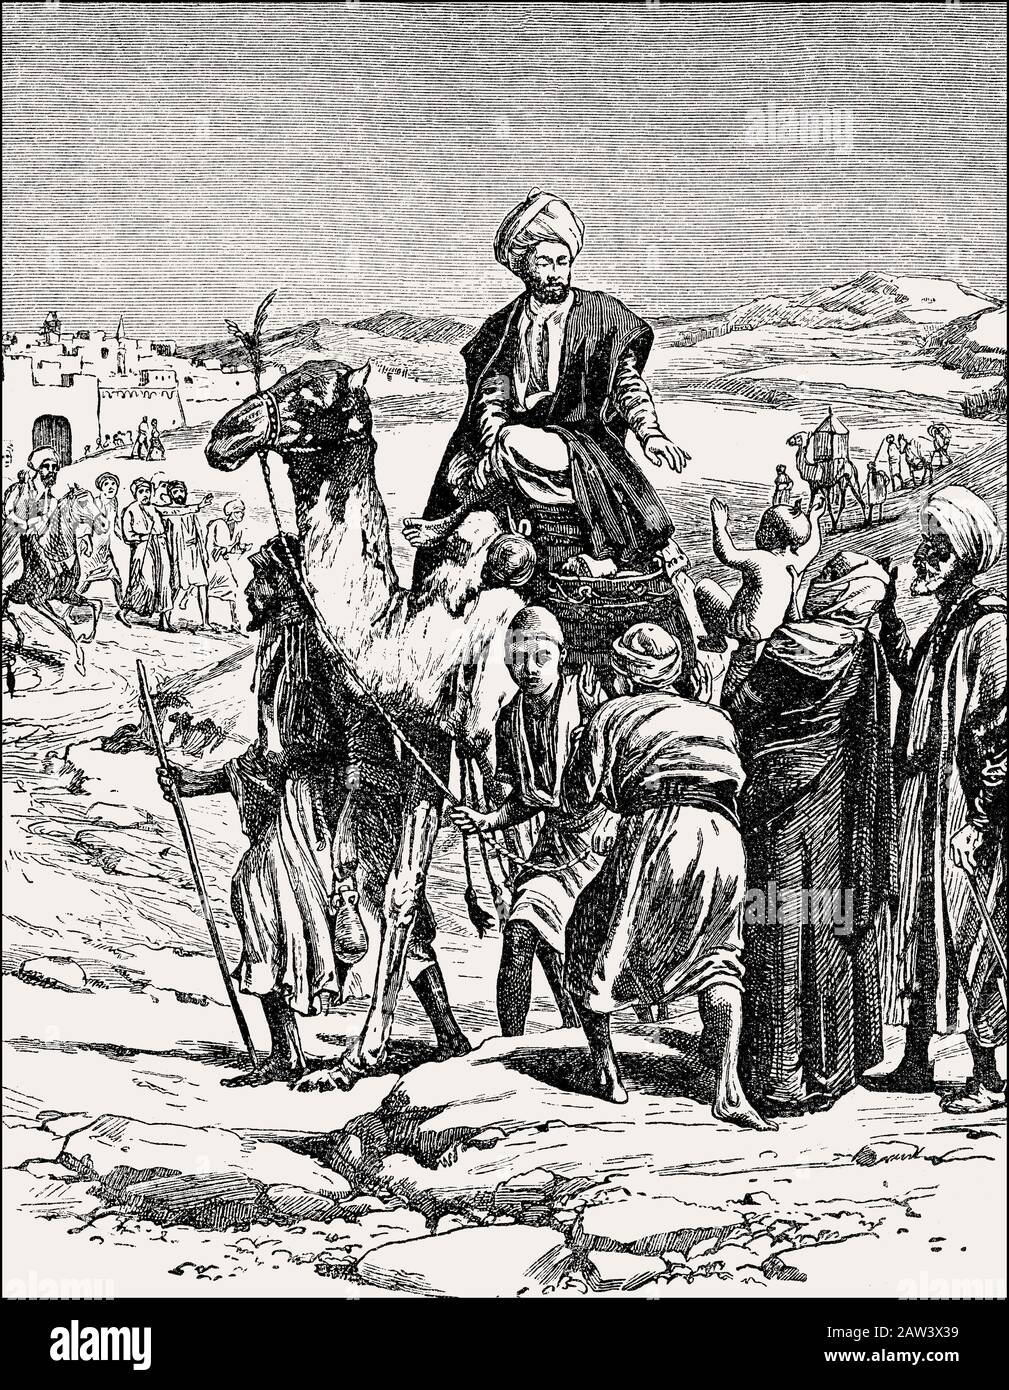 El profeta Mahoma en Medina, c. 570 - 632, fundador de la religión del Islam Foto de stock